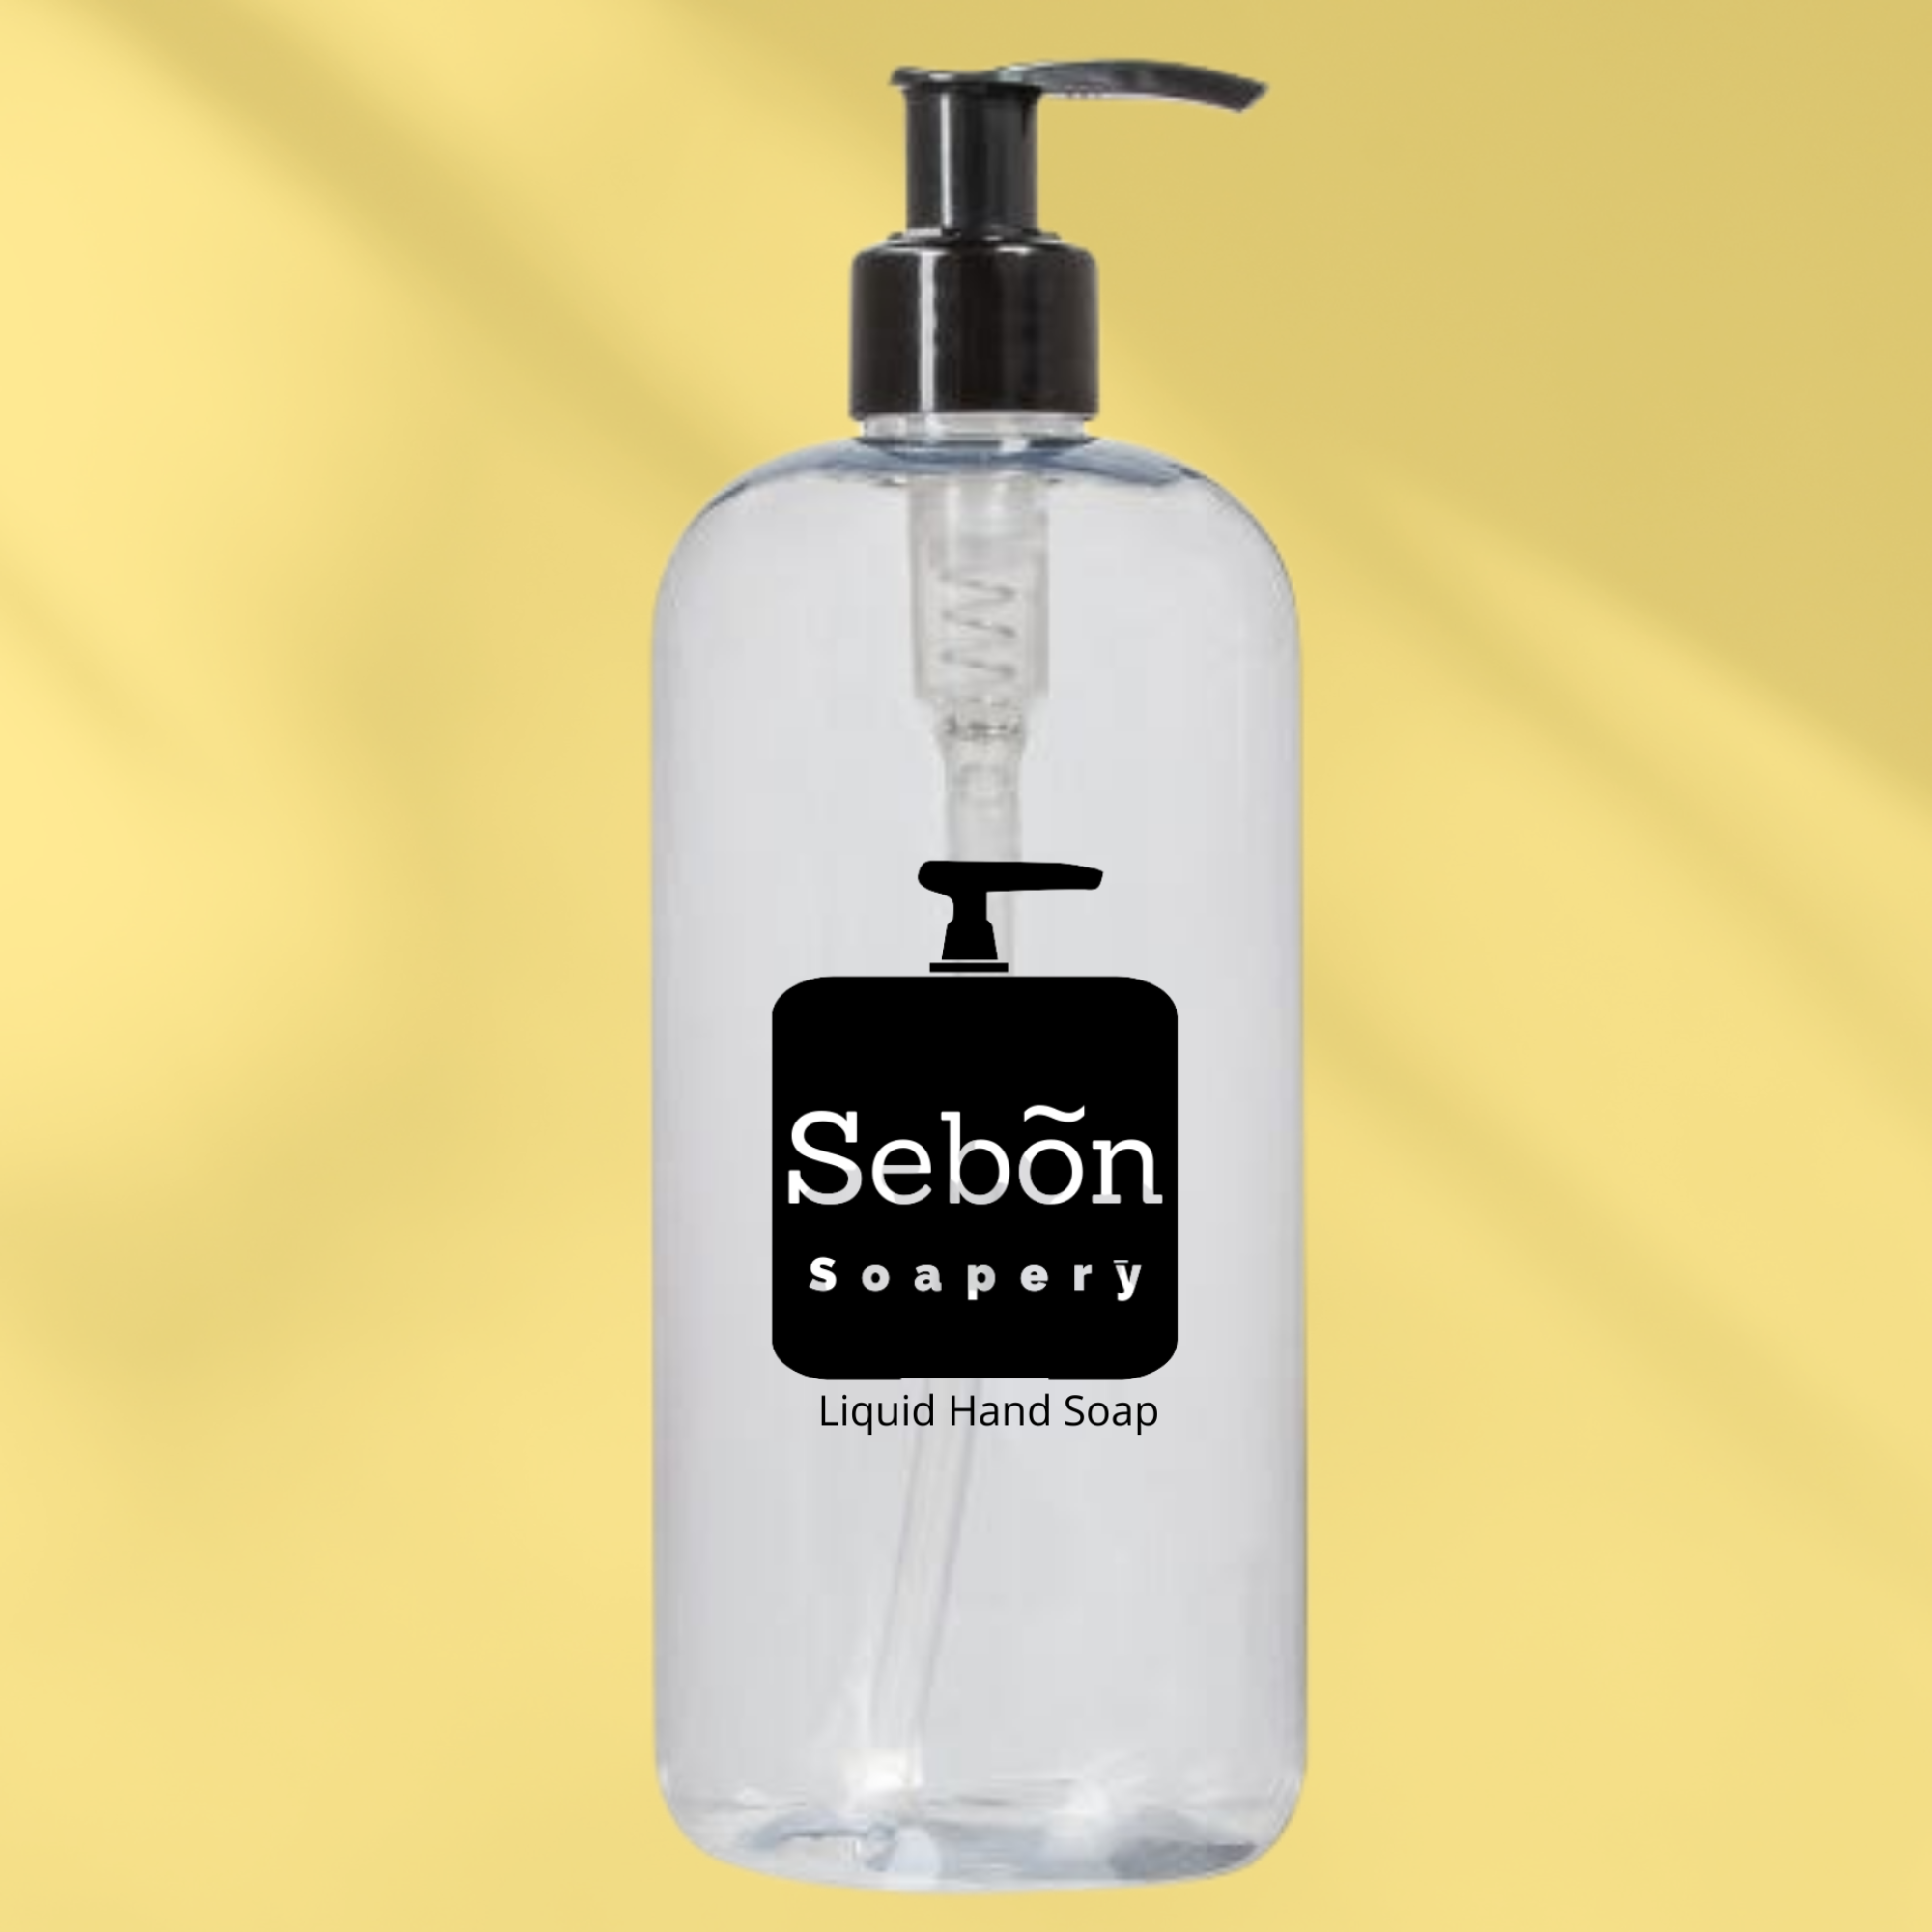 Sebon Blackberry & Magnolia Scented Liquid Hand Soap with Olive Oil